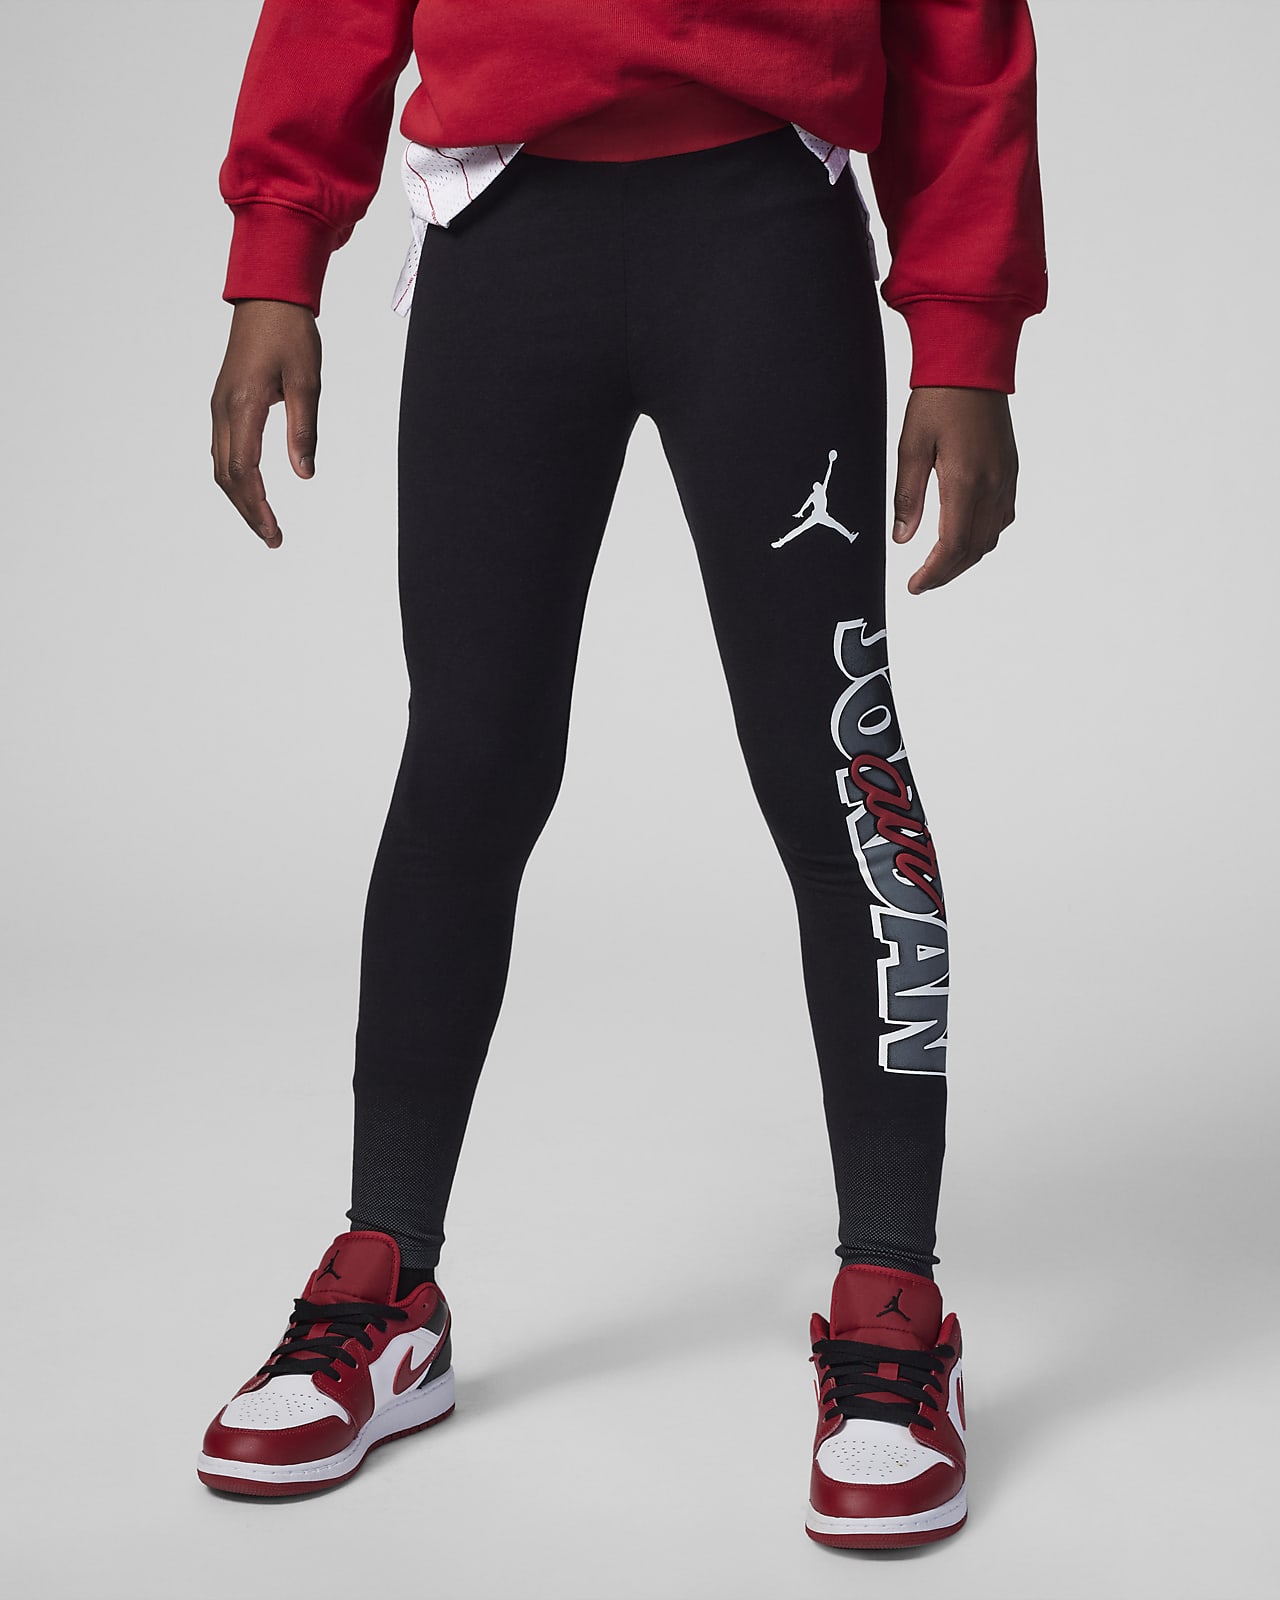 Jordan Blocked Air-Ress Leggings Big Kids' Leggings. Nike JP